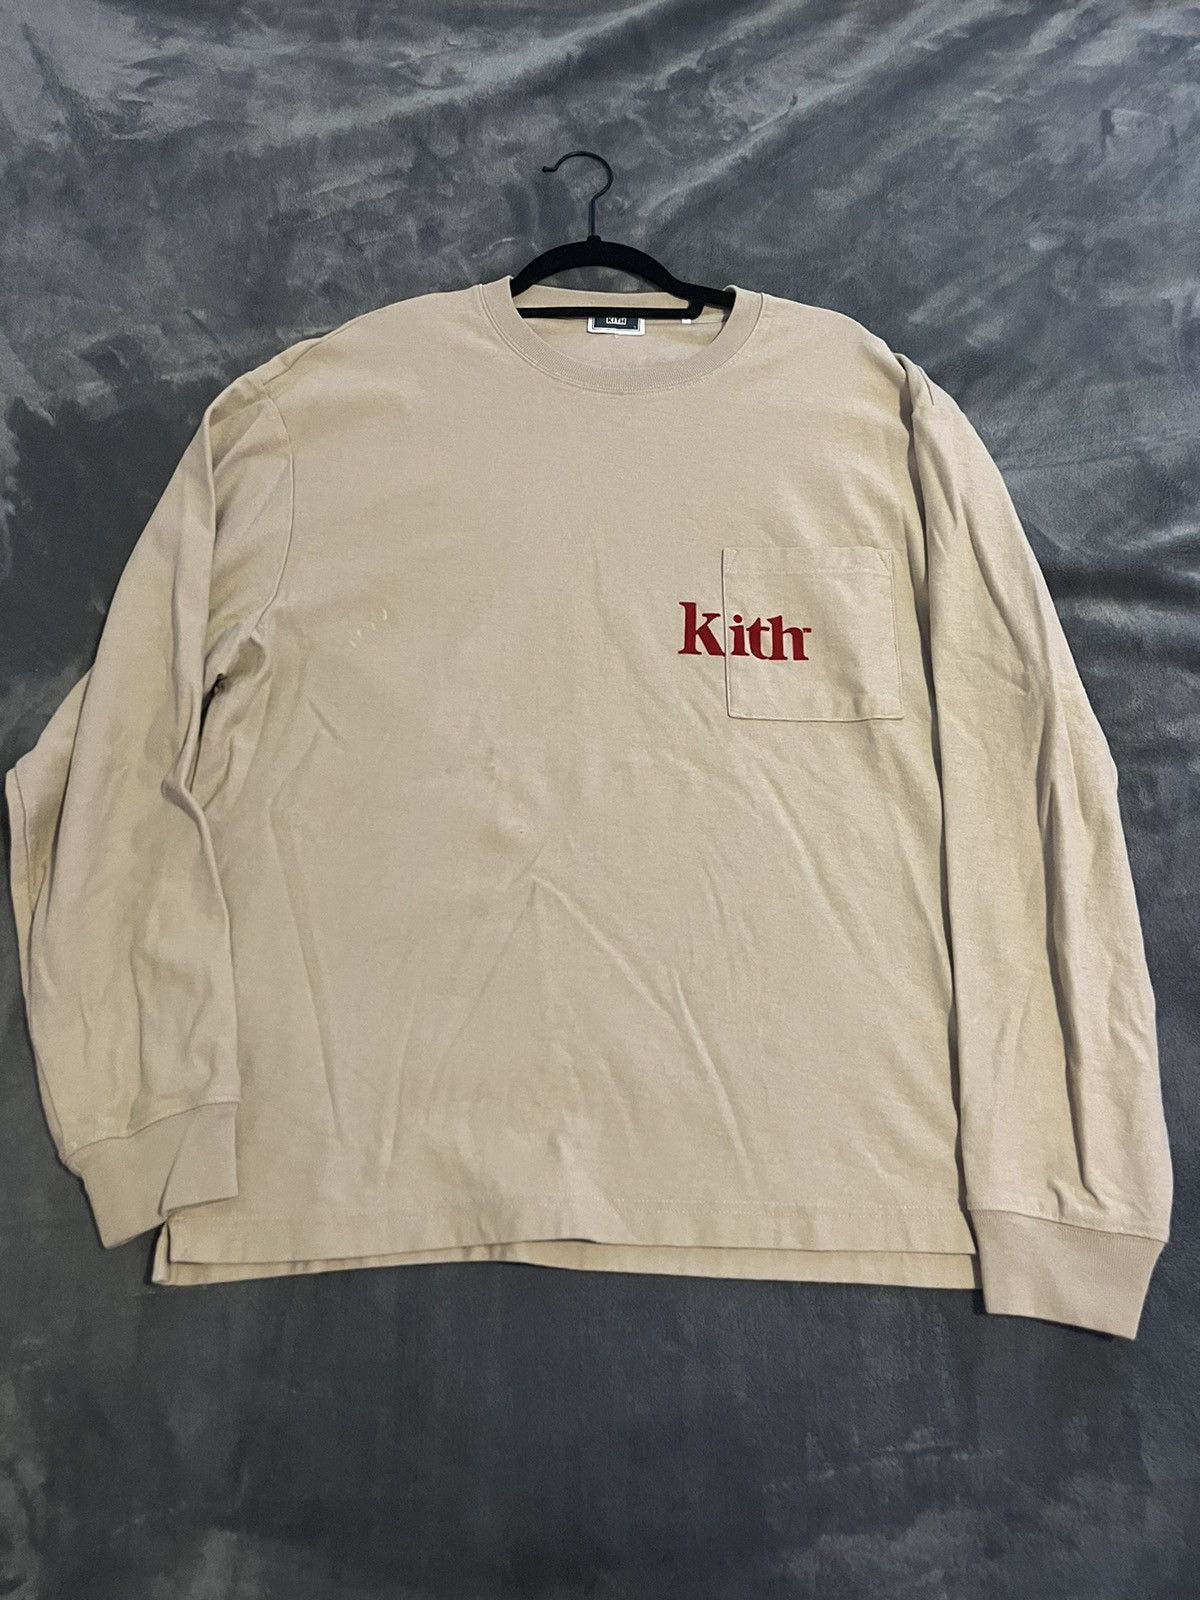 Kith Kith Long Sleeve T Shirt | Grailed